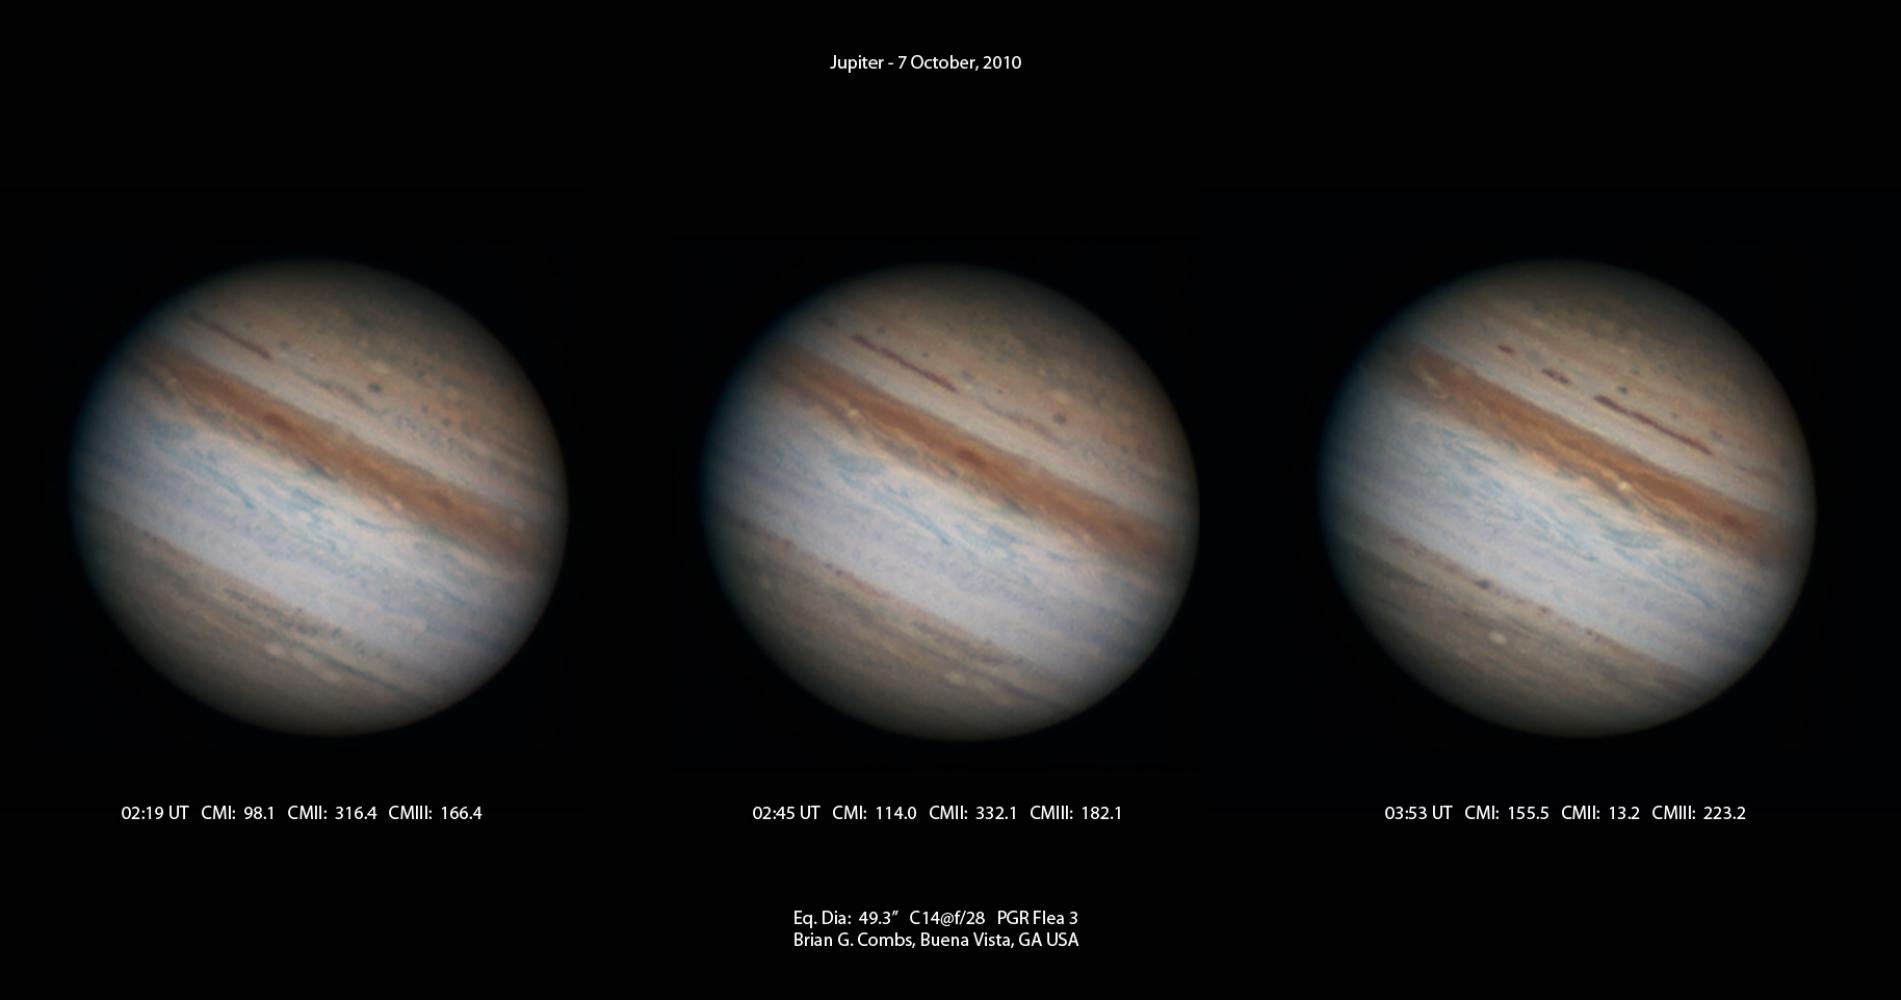 Jupiter - October 7, 2010